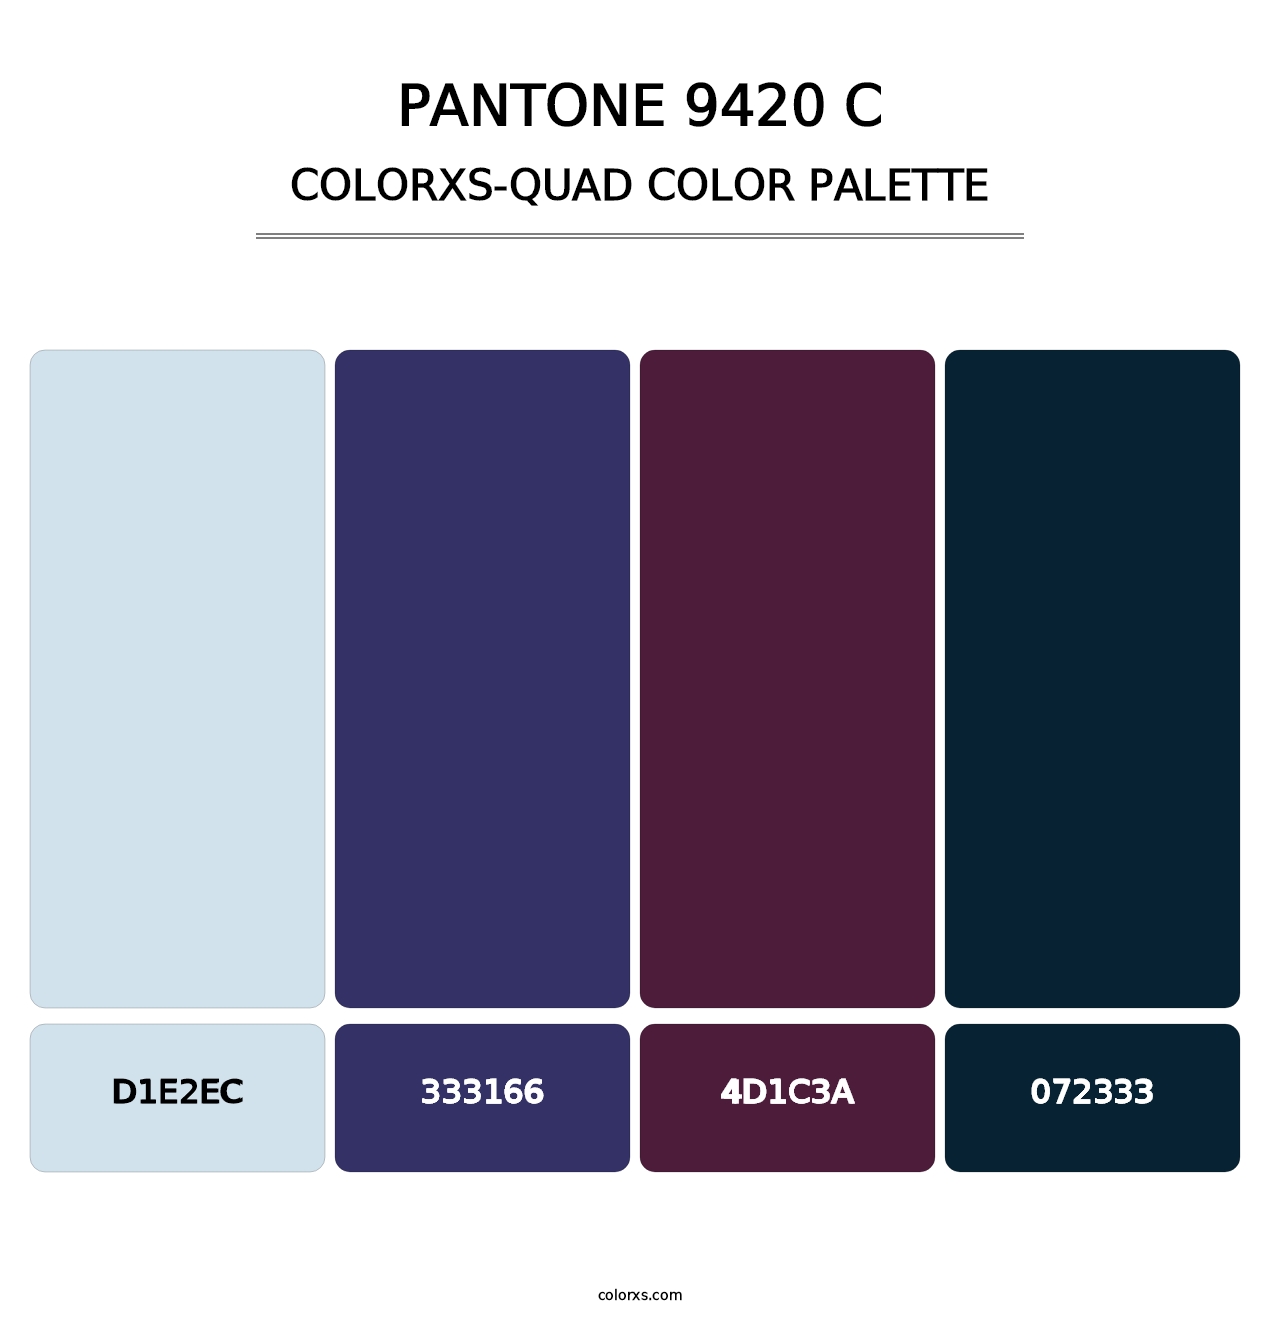 PANTONE 9420 C - Colorxs Quad Palette